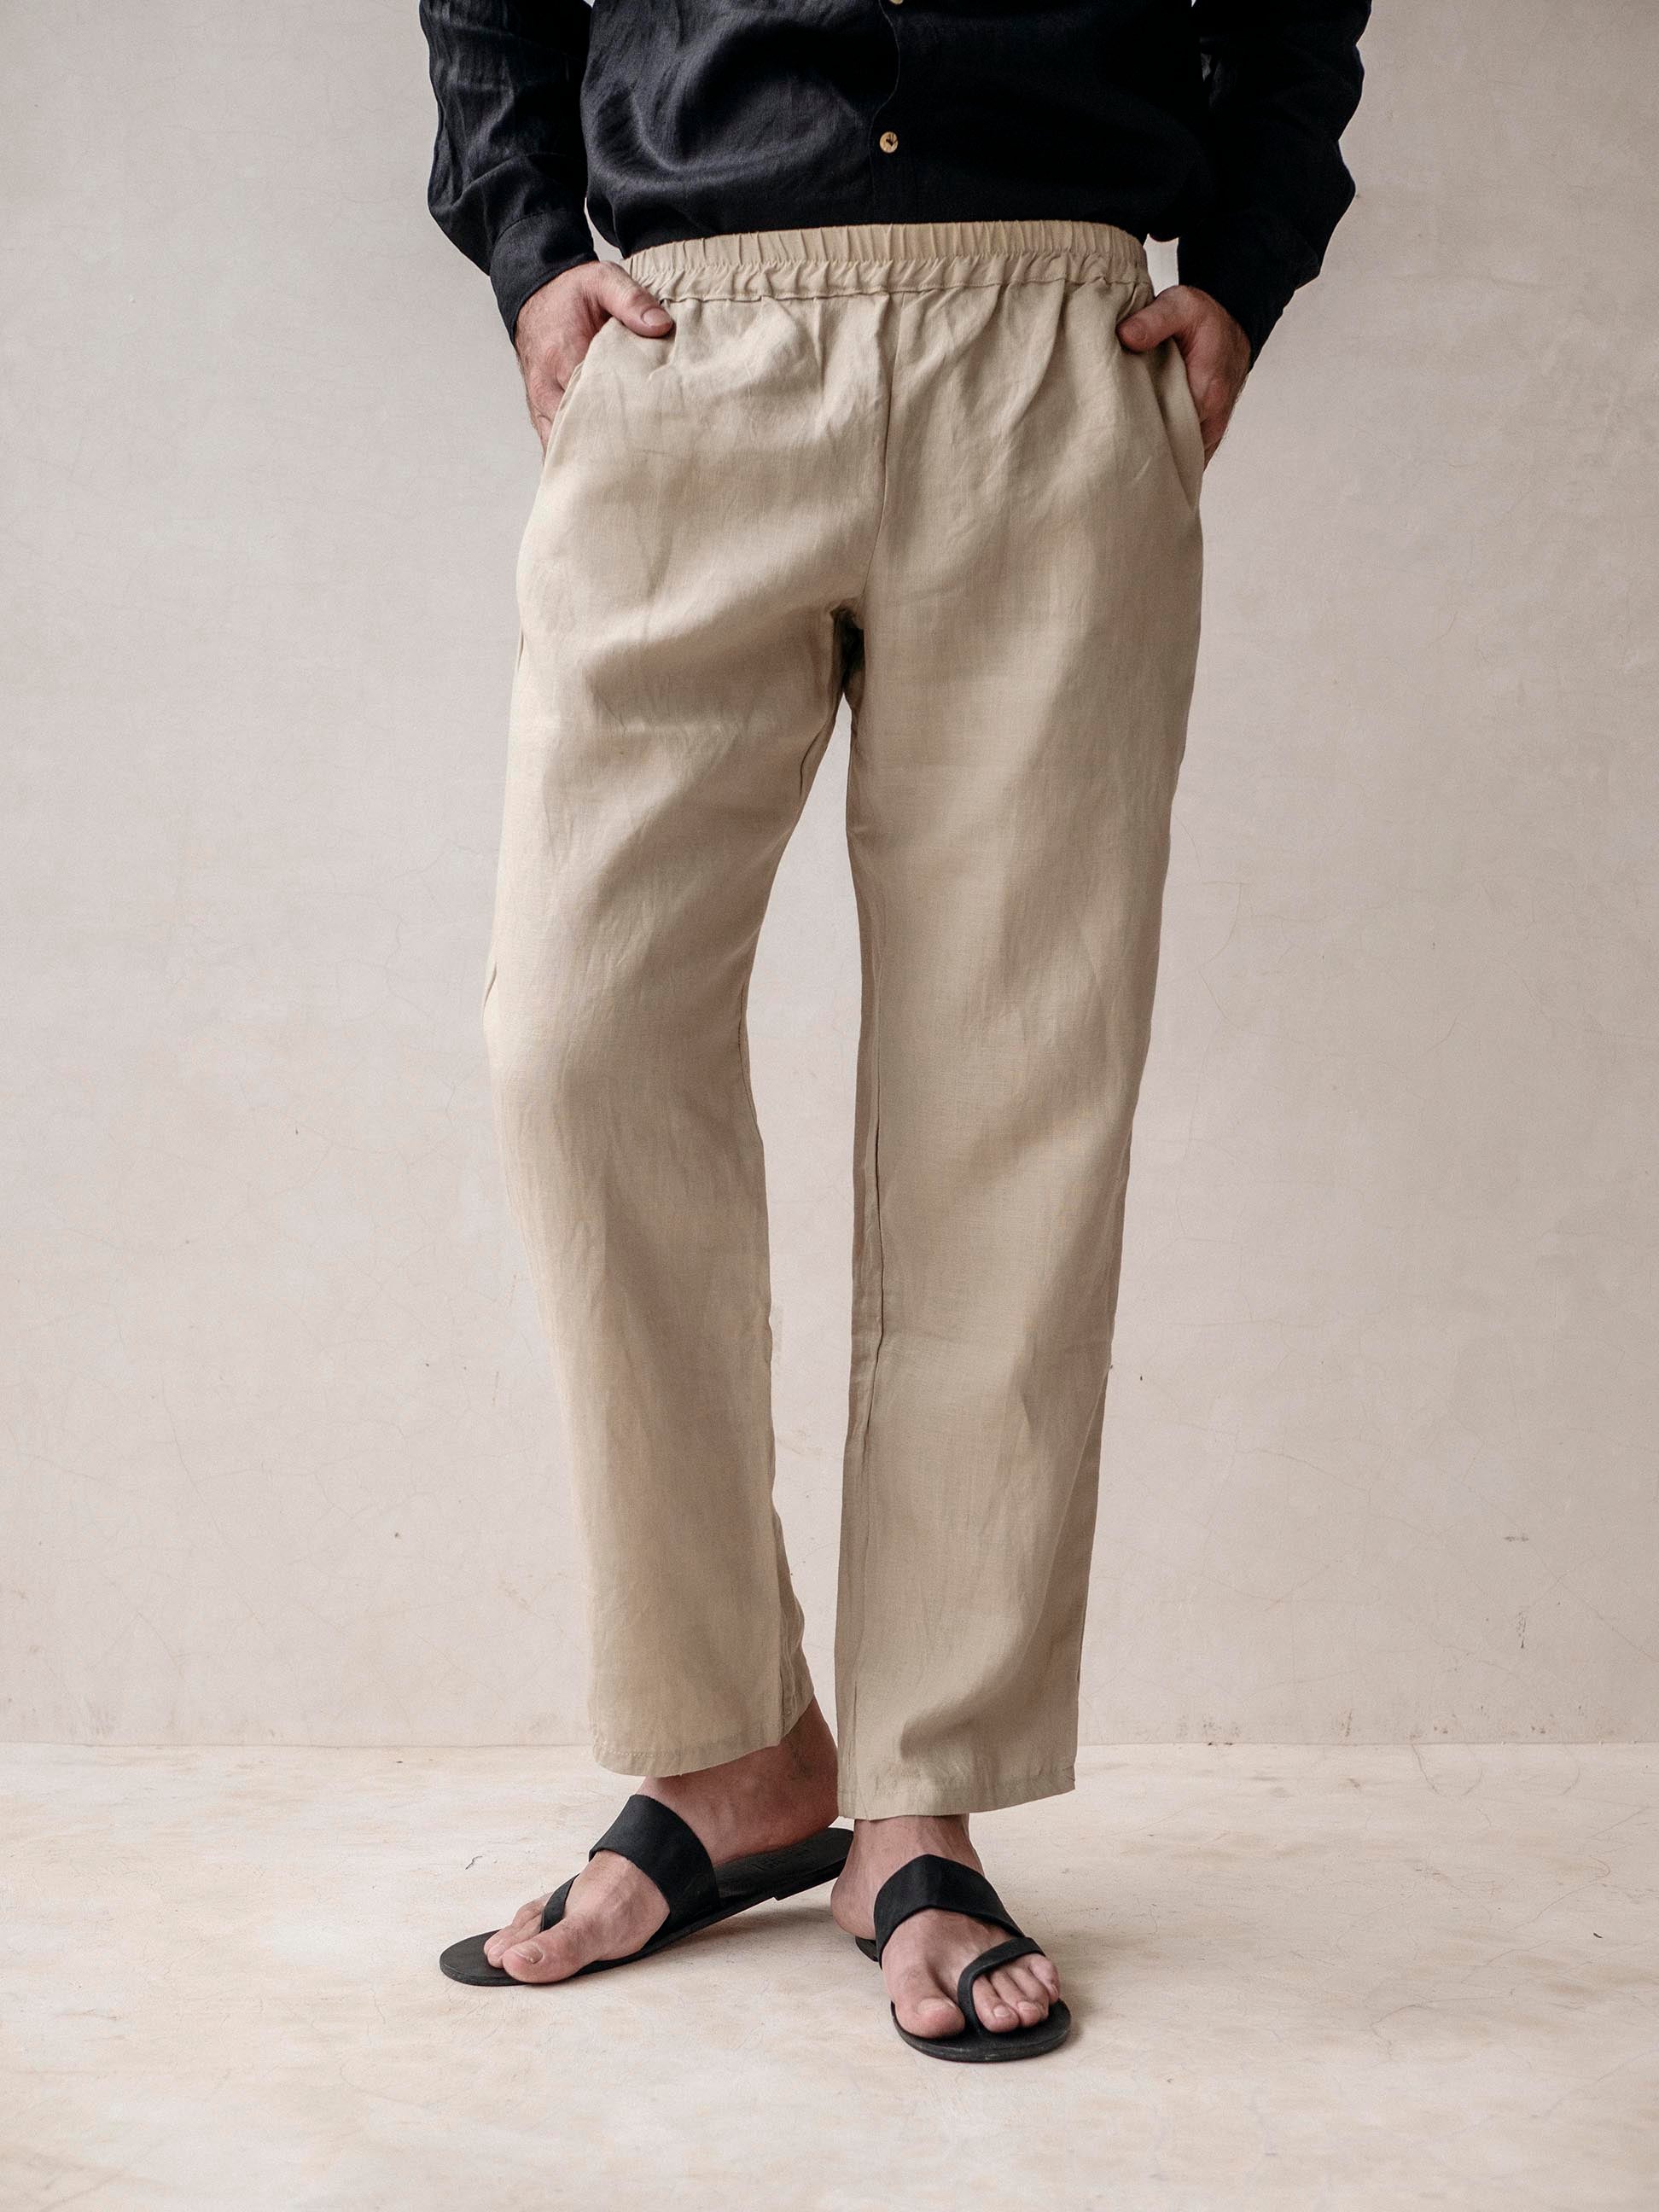 Buy Men Linen Trousers Online in India | Myntra